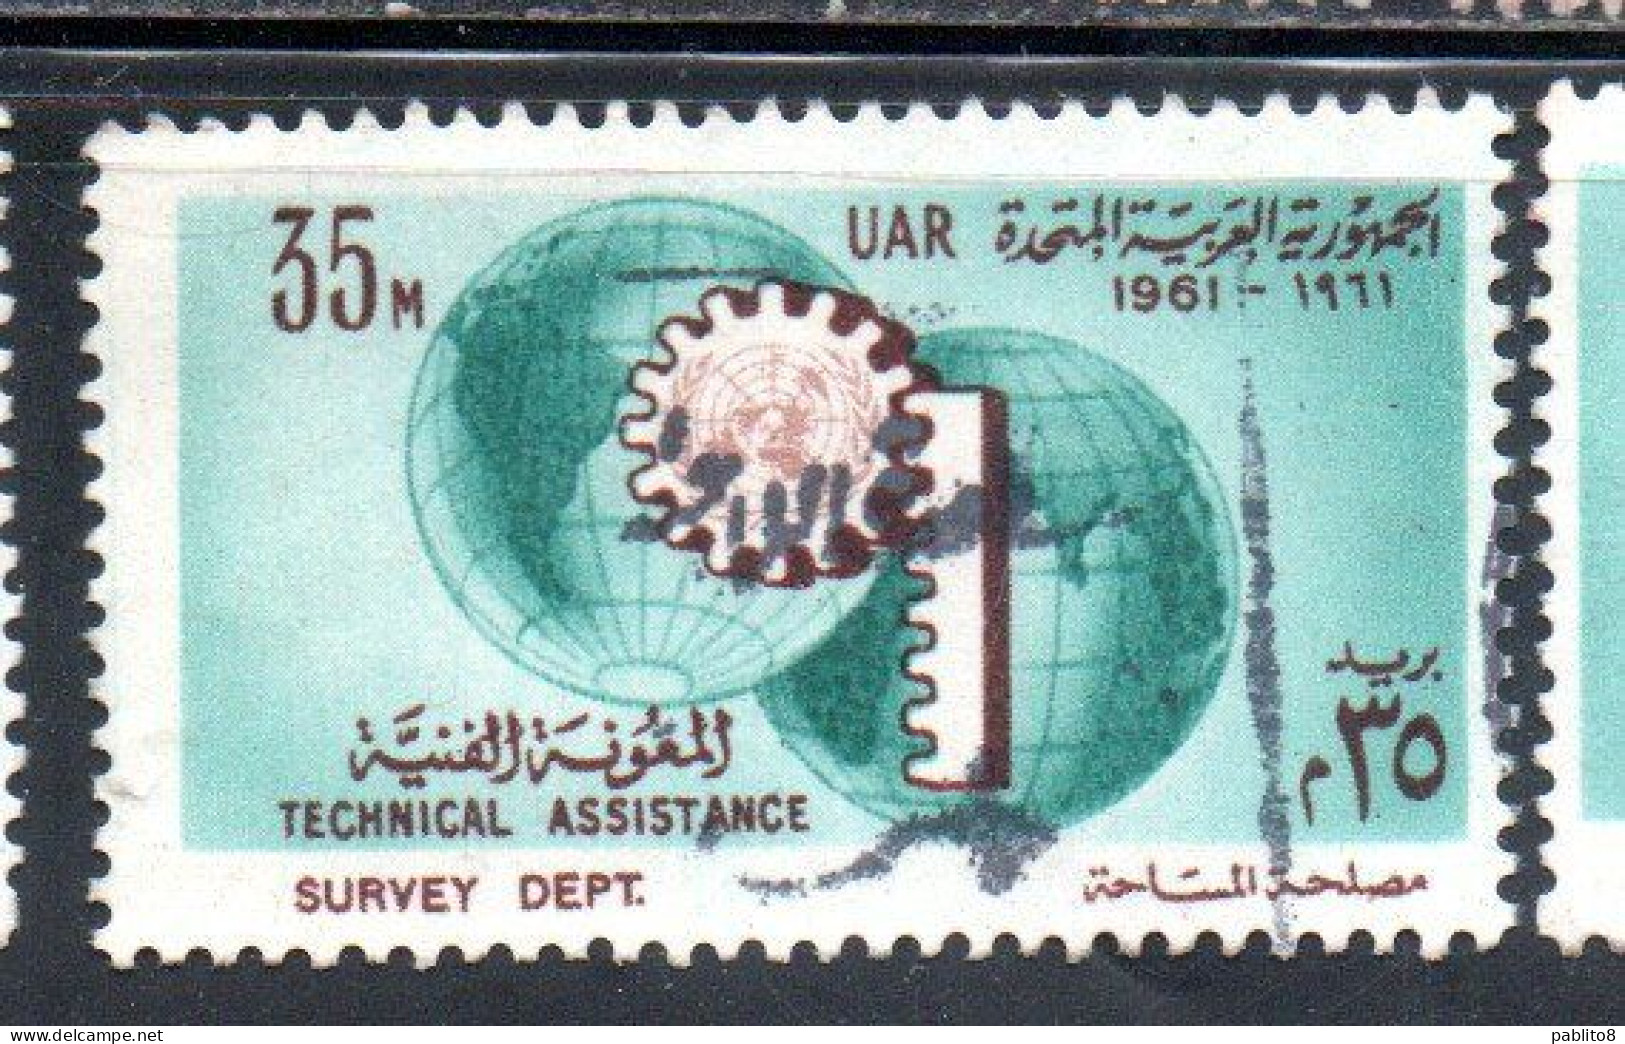 UAR EGYPT EGITTO 1961 UN ONU TECHNICAL ASSISTENCE PROGRAM AND 16th ANNIVERSARY 35m USED USATO OBLITERE' - Gebraucht